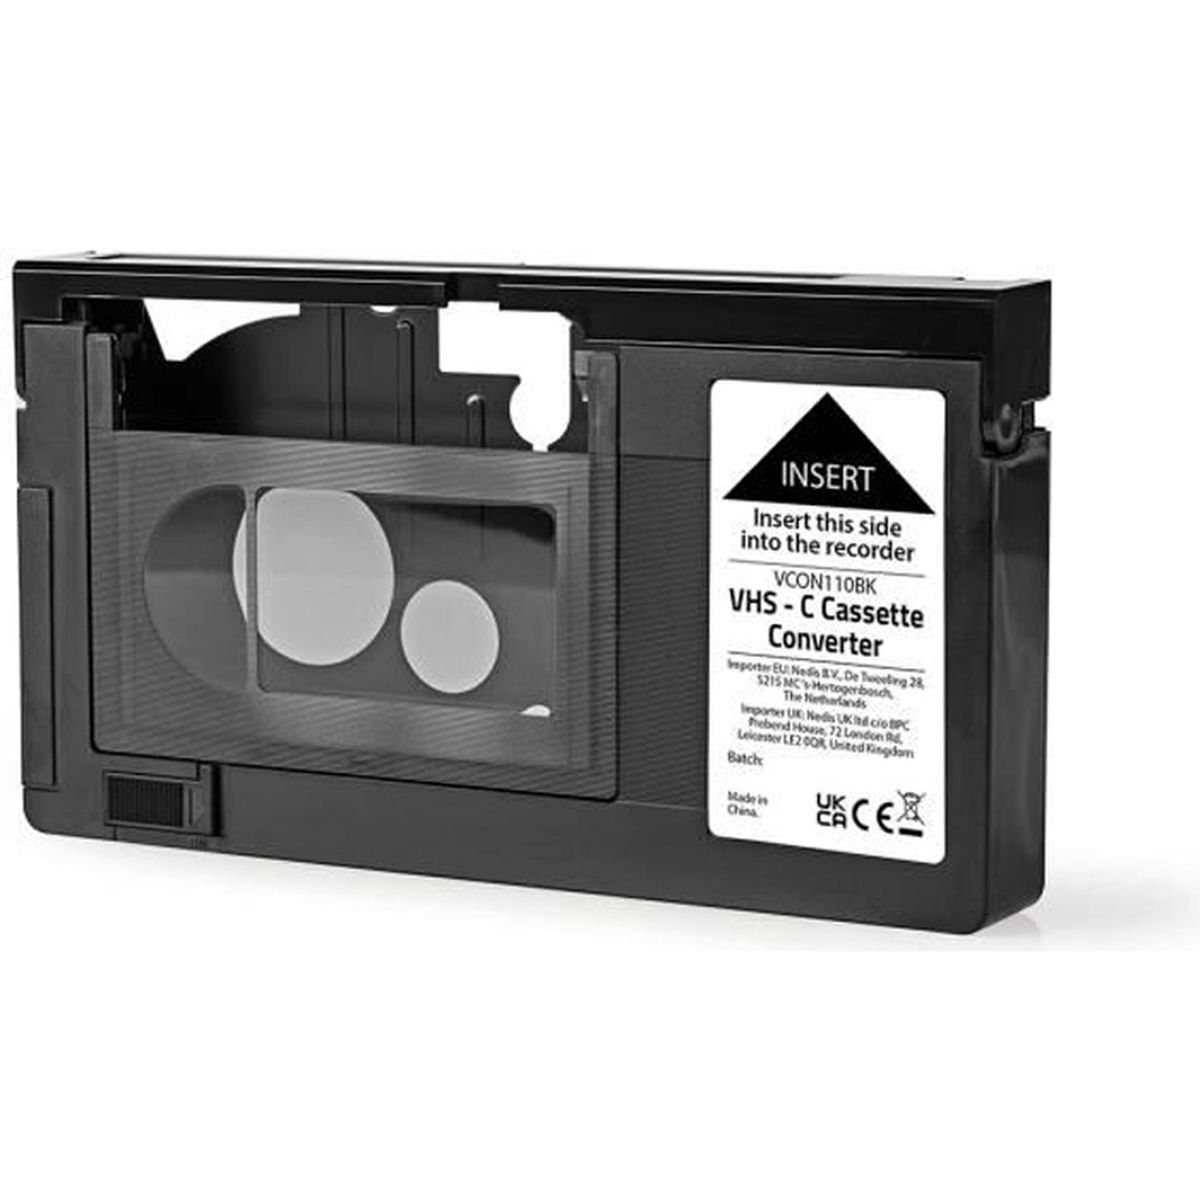 Existe-t-il un adaptateur Hi8 ou 8mm fonctionnant avec une cassette VHS ? -  Studiovidz